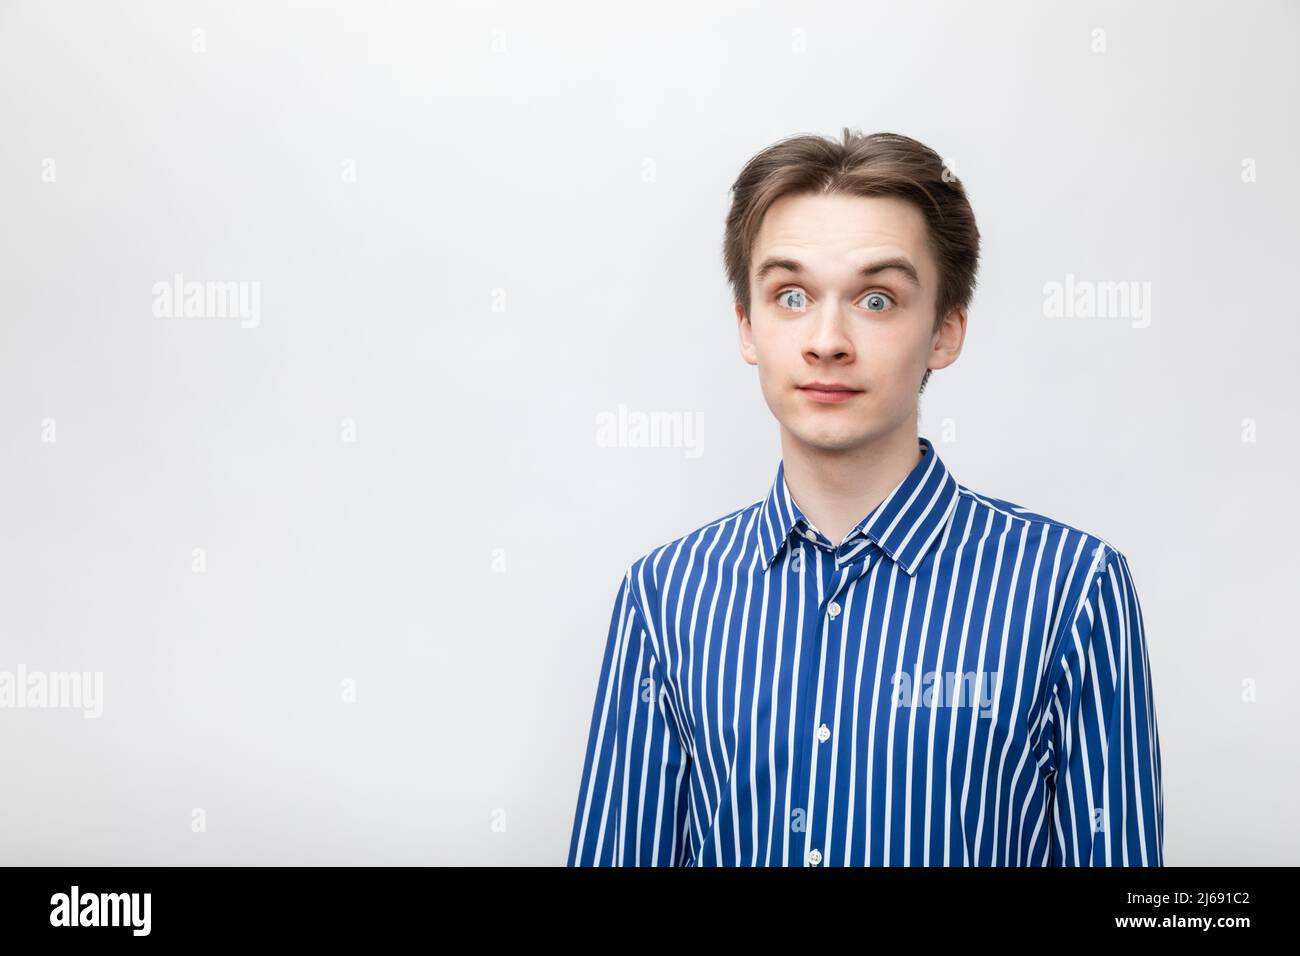 Porträt eines schockierten, staunenden jungen Mannes, der ein blau-weiß gestreiftes Knopfhemd mit weit geöffneten Augen trägt. Studio auf grauem Hintergrund aufgenommen Stockfoto